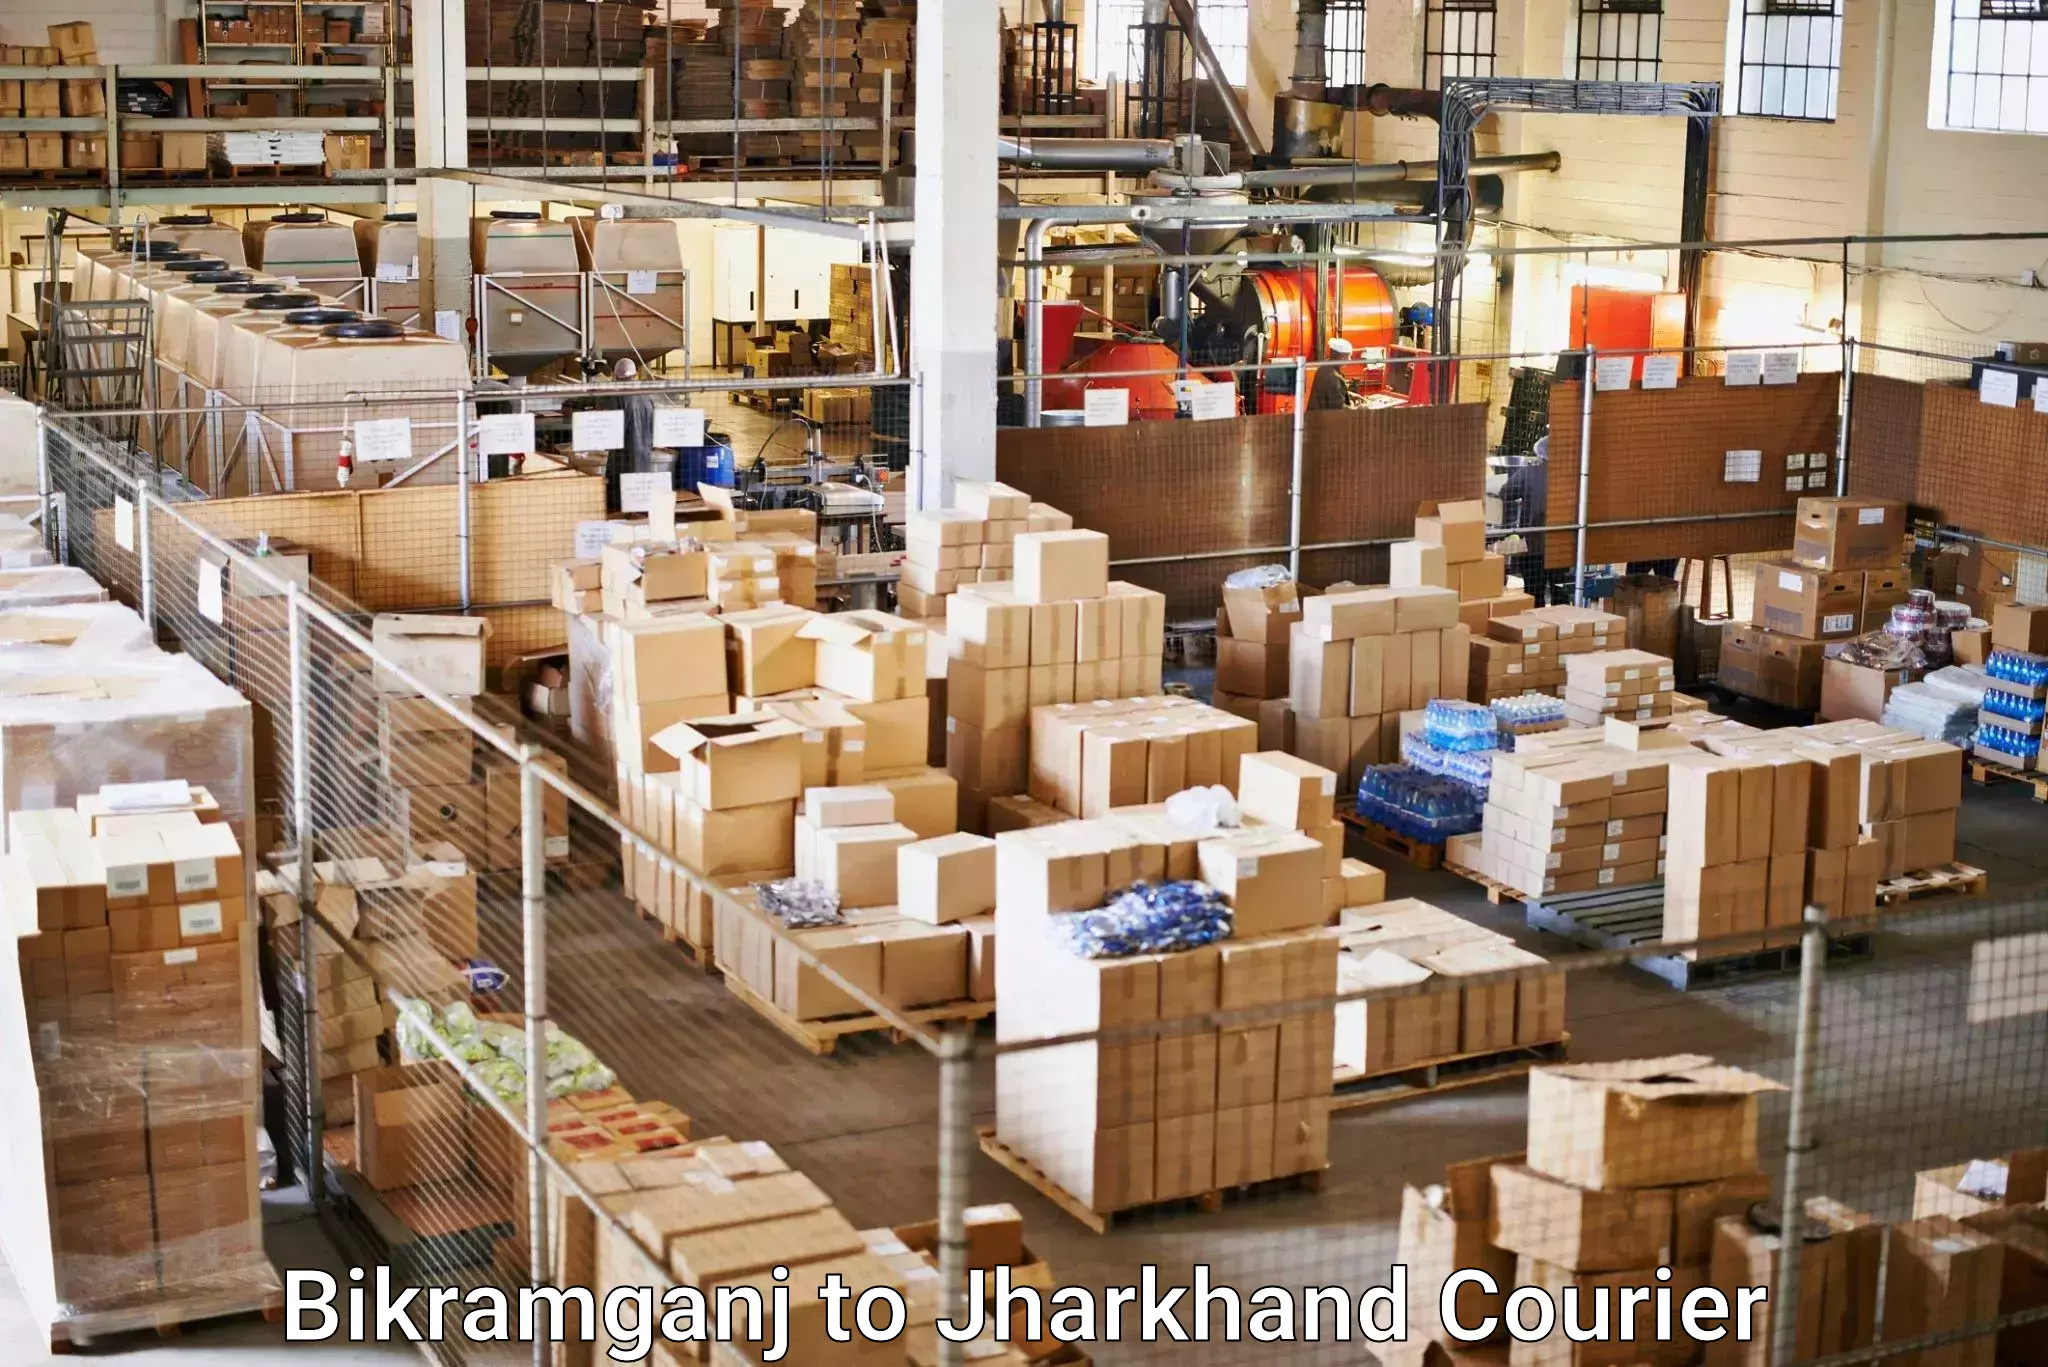 Reliable courier service Bikramganj to Jharkhand